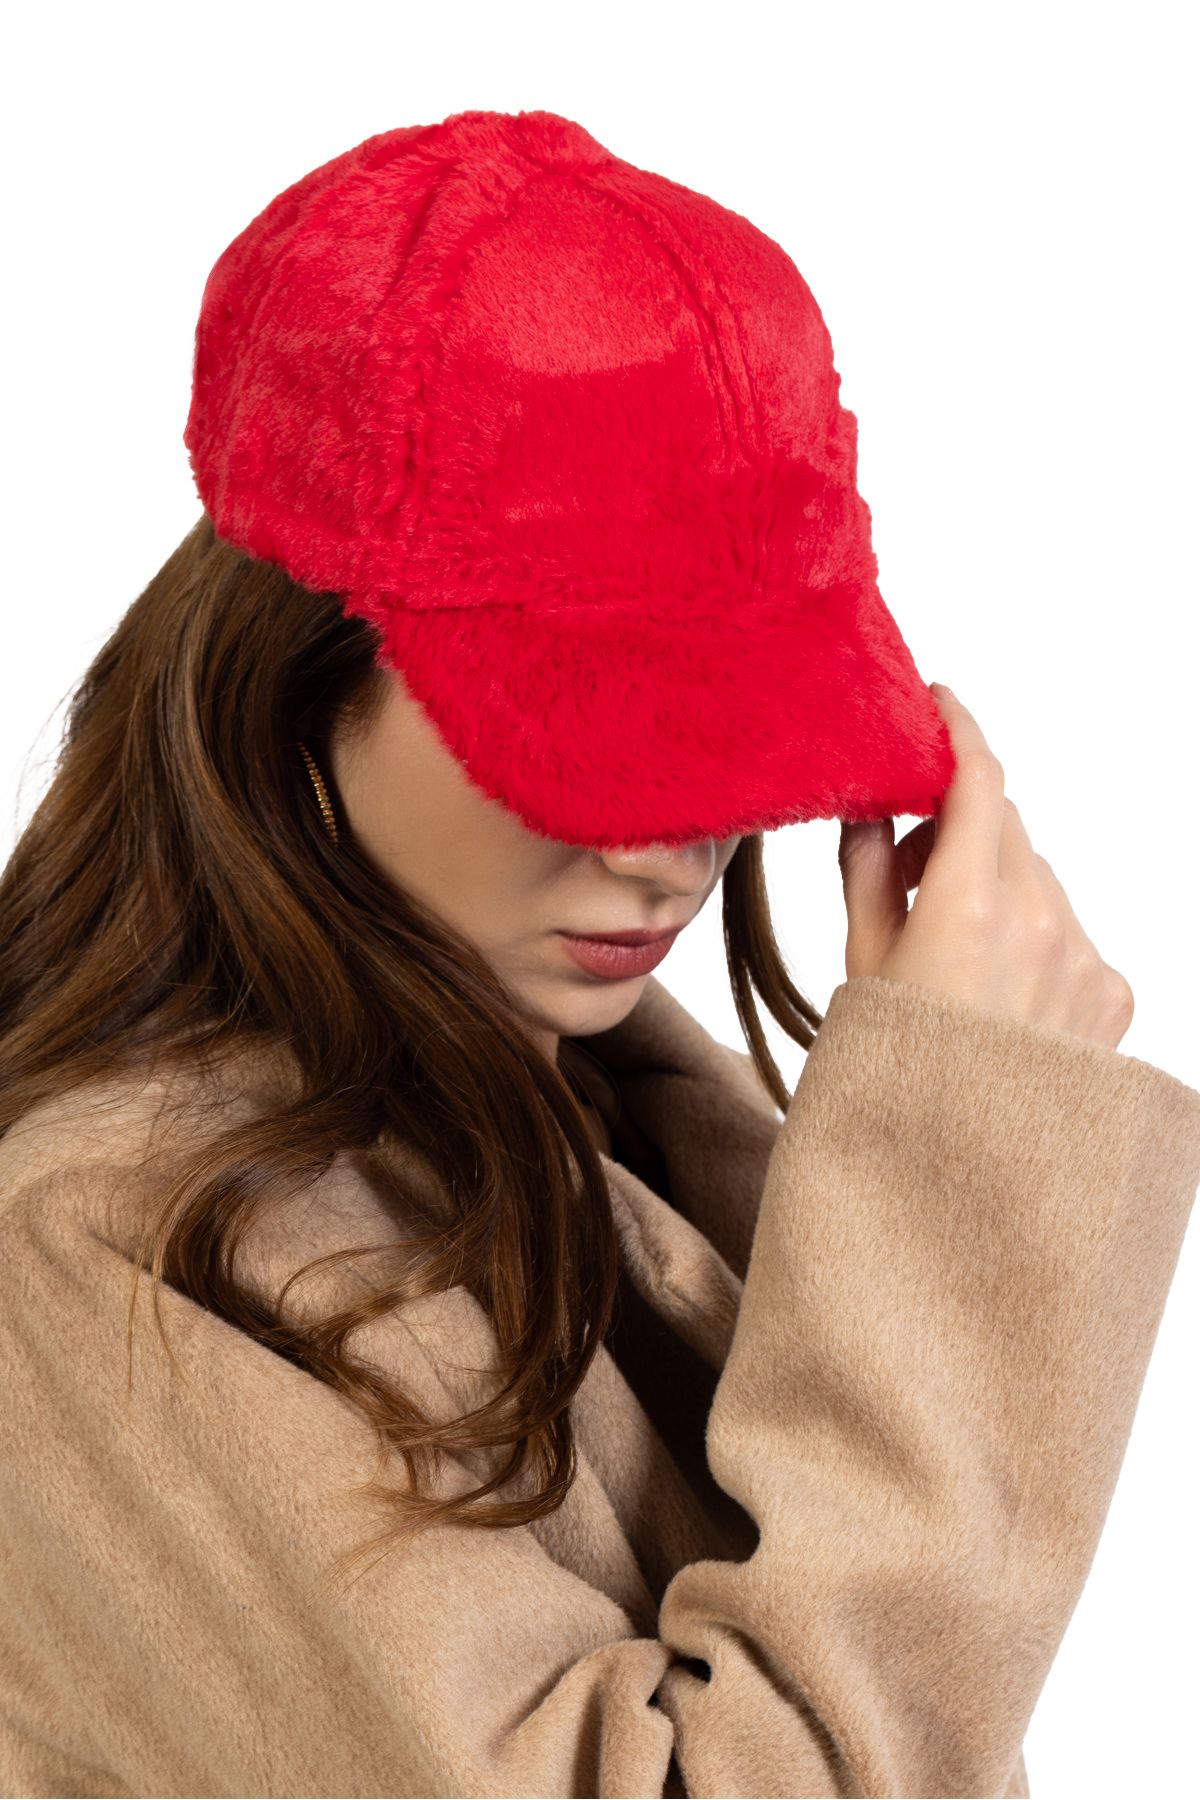 Yumuşak Tüylü Peluş Kışlık Kep Kadın Şapka Kırmızı